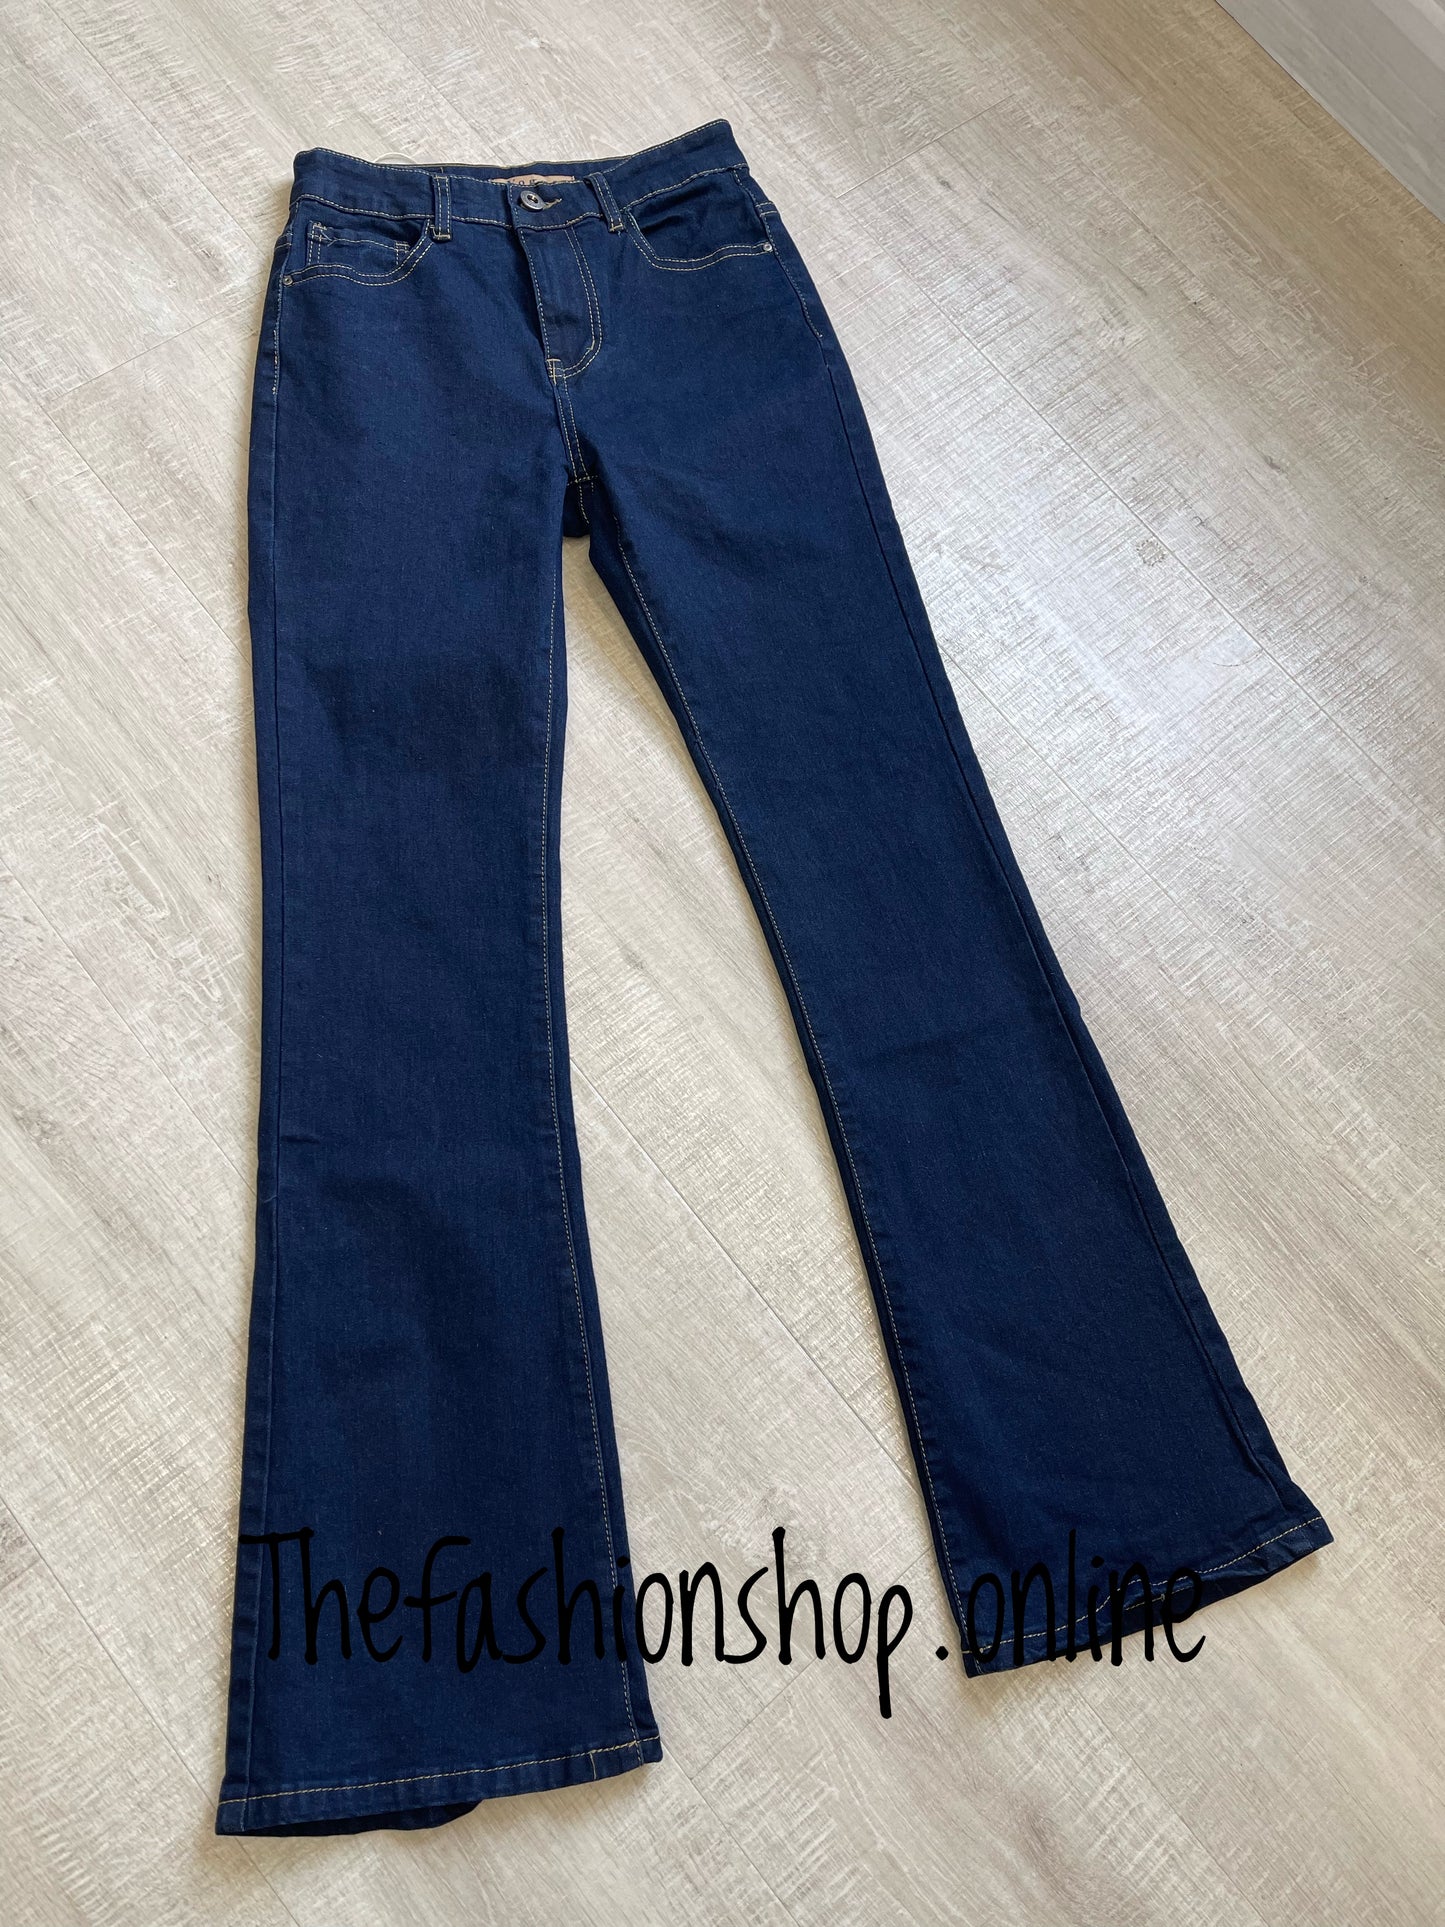 Dark denim bootcut jeans sizes 8-16